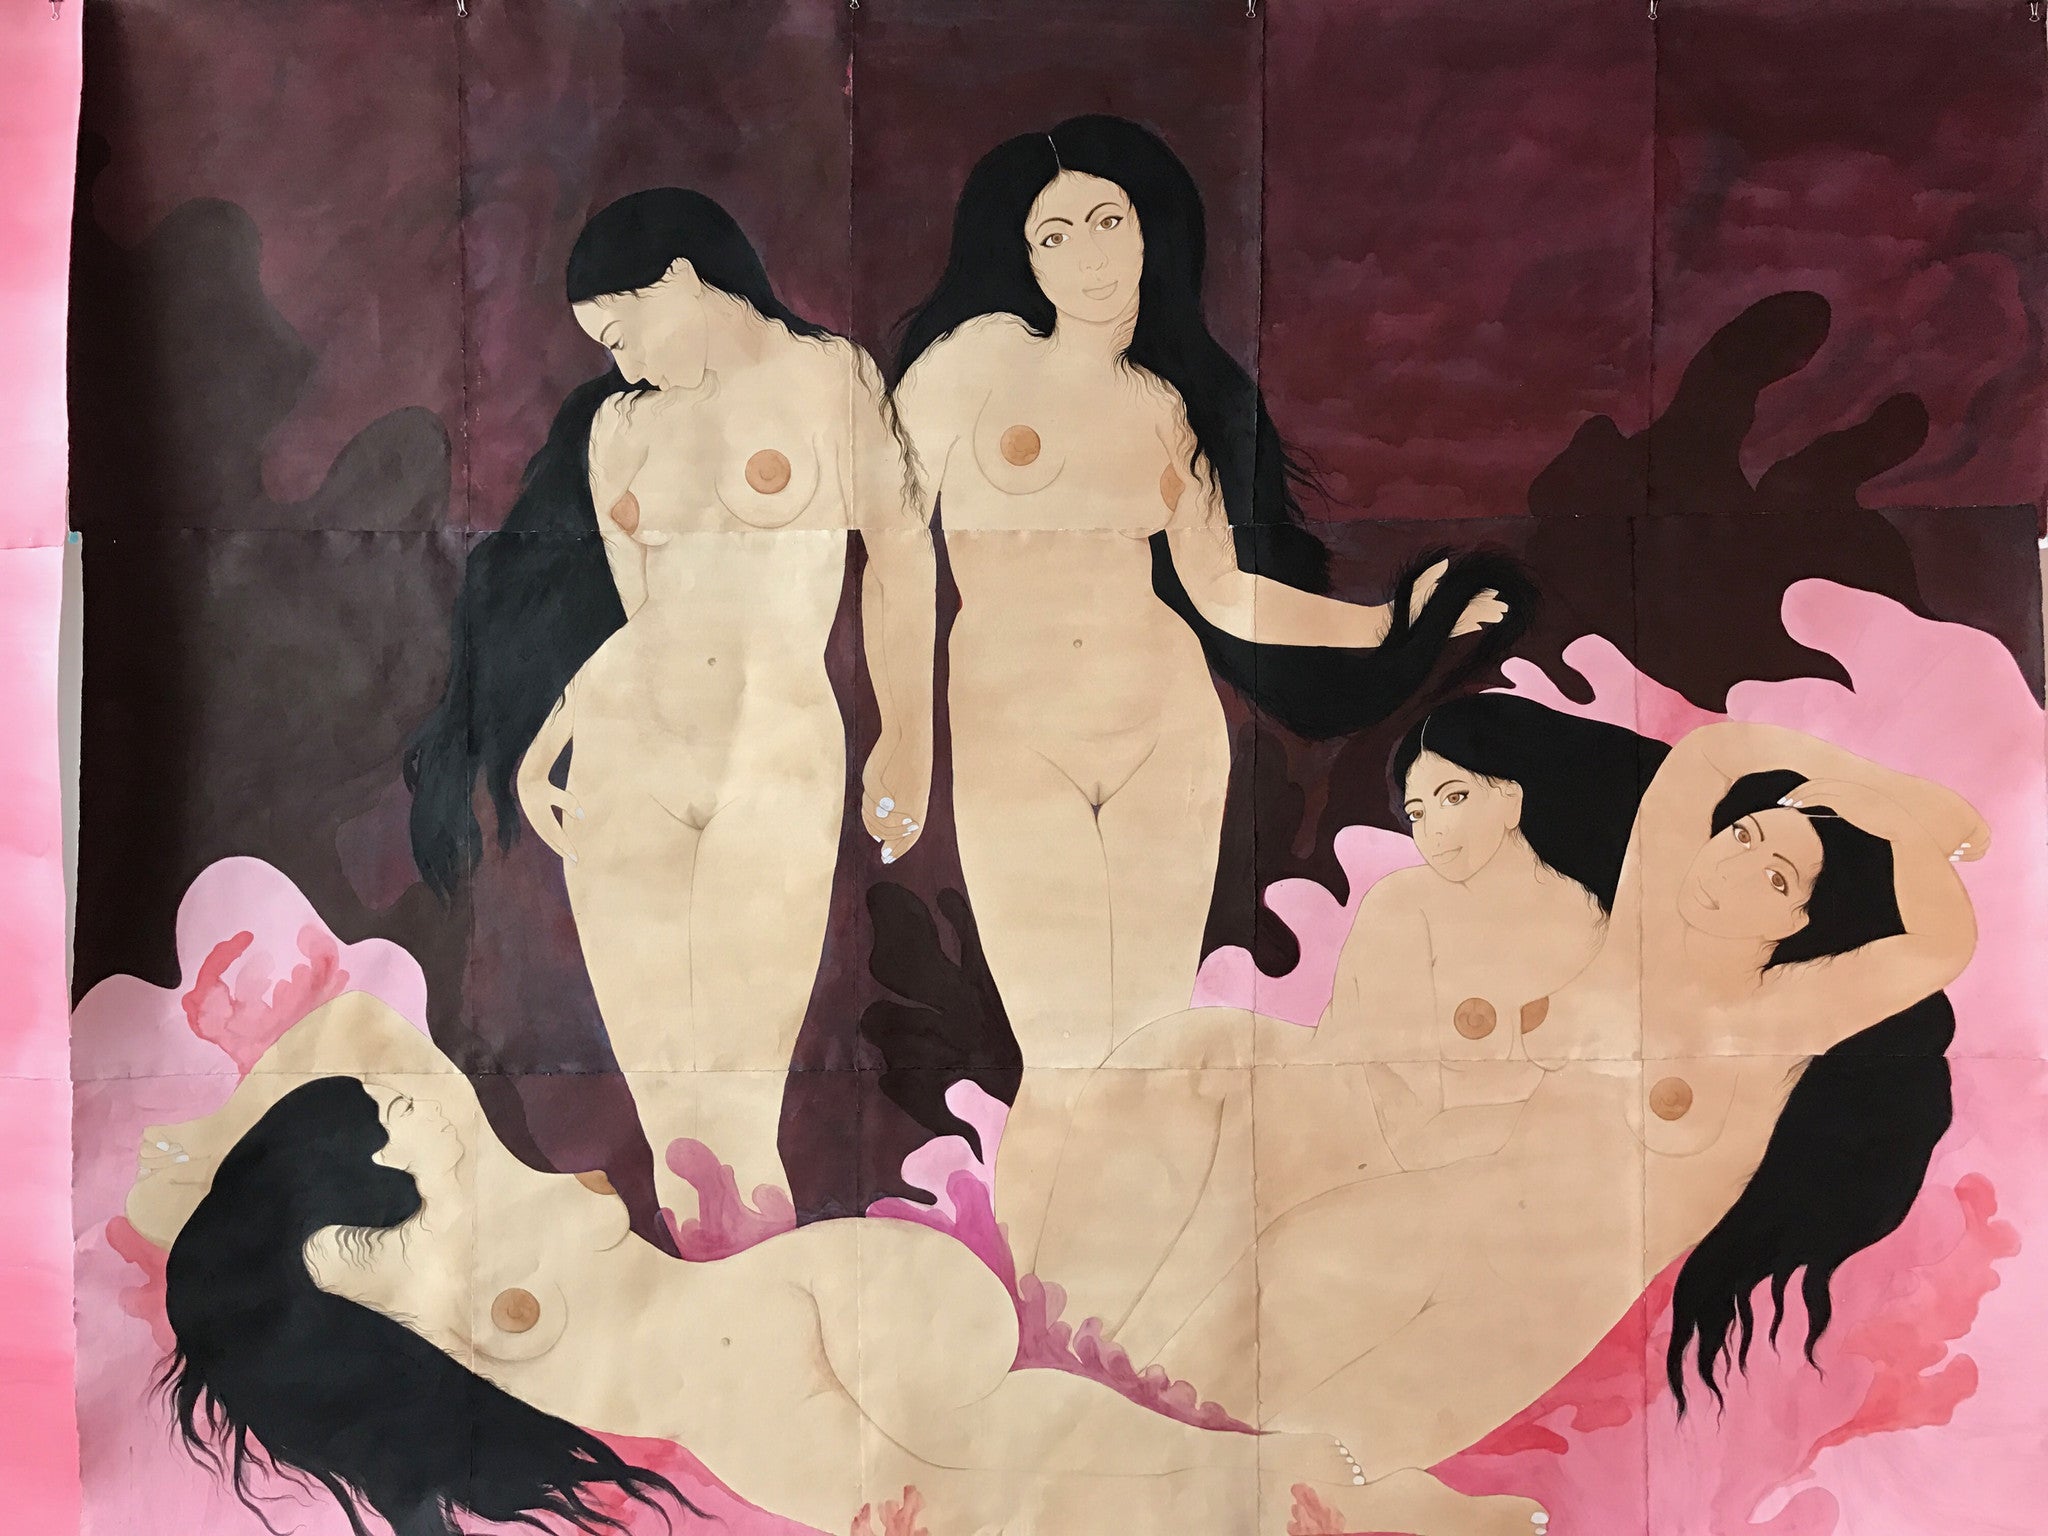 Hiba Schahbaz, "Women's Room"